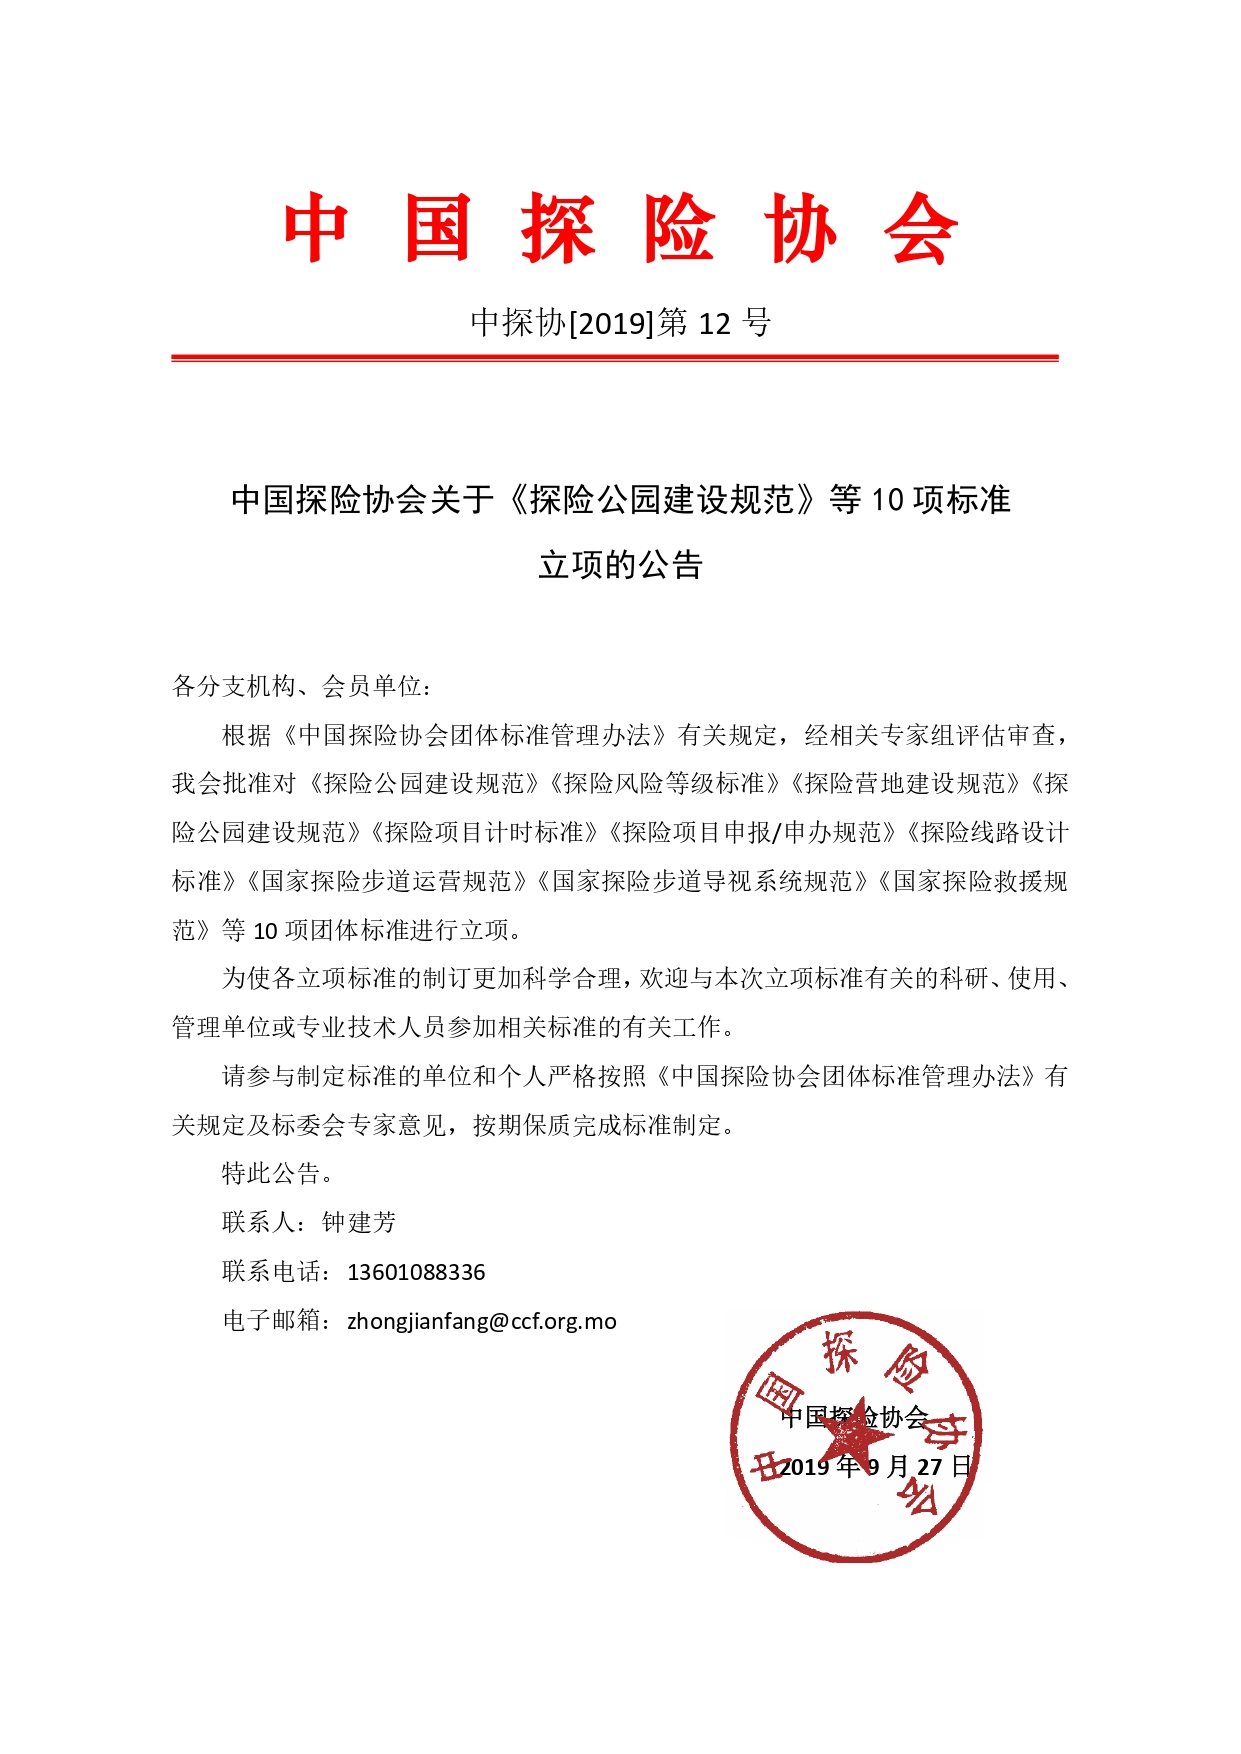 中国探险协会关于《探险公园建设规范》等10项团体标准立项的公告_page-0001.jpg